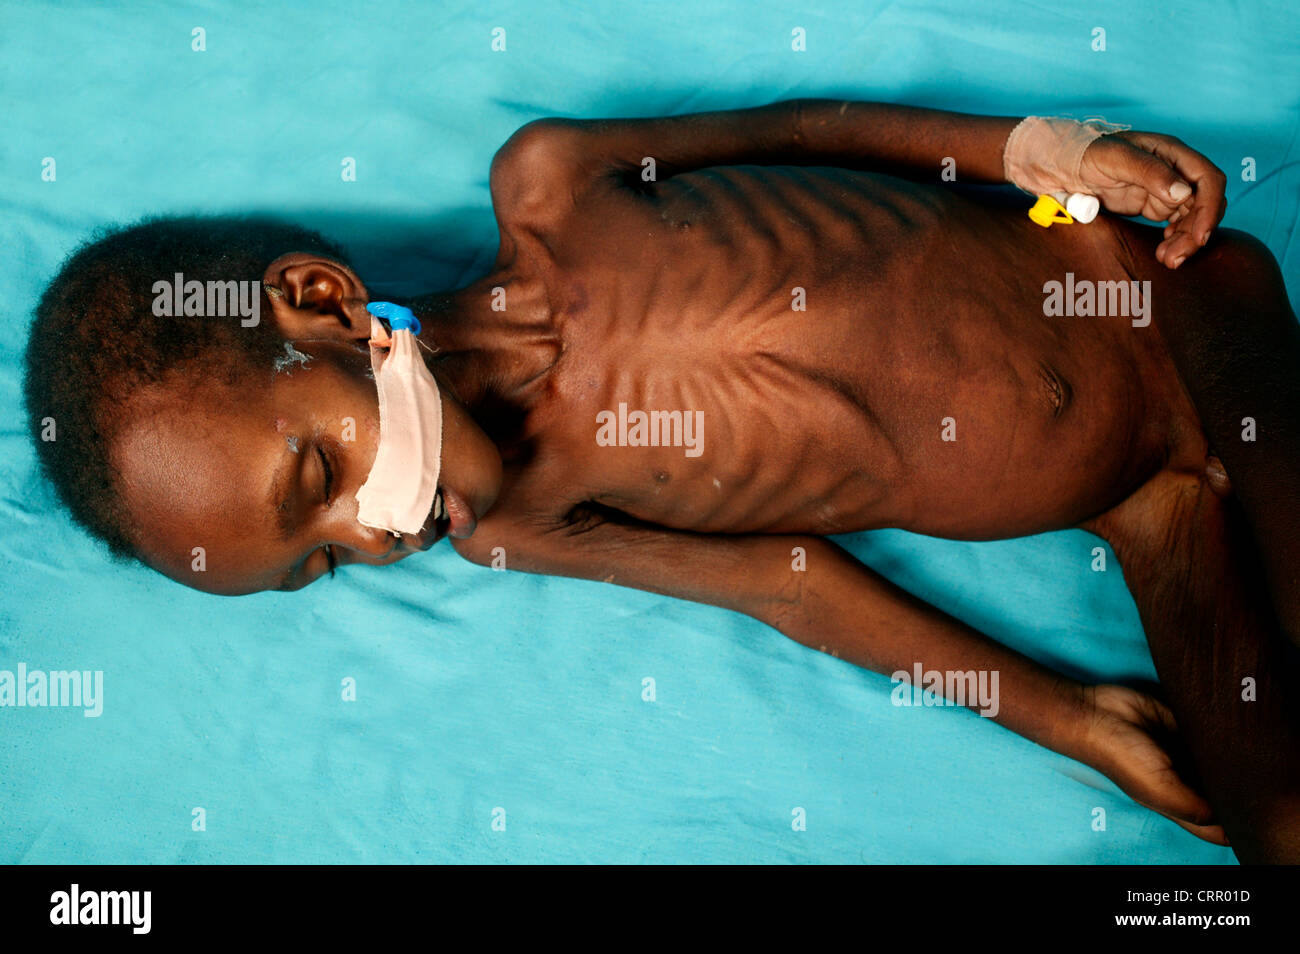 Ein 2 Jahre alter Junge, leiden unter schweren Mangelernährung mit schweren Wastening und Verlust des subkutanen Fettgewebes. Stockfoto